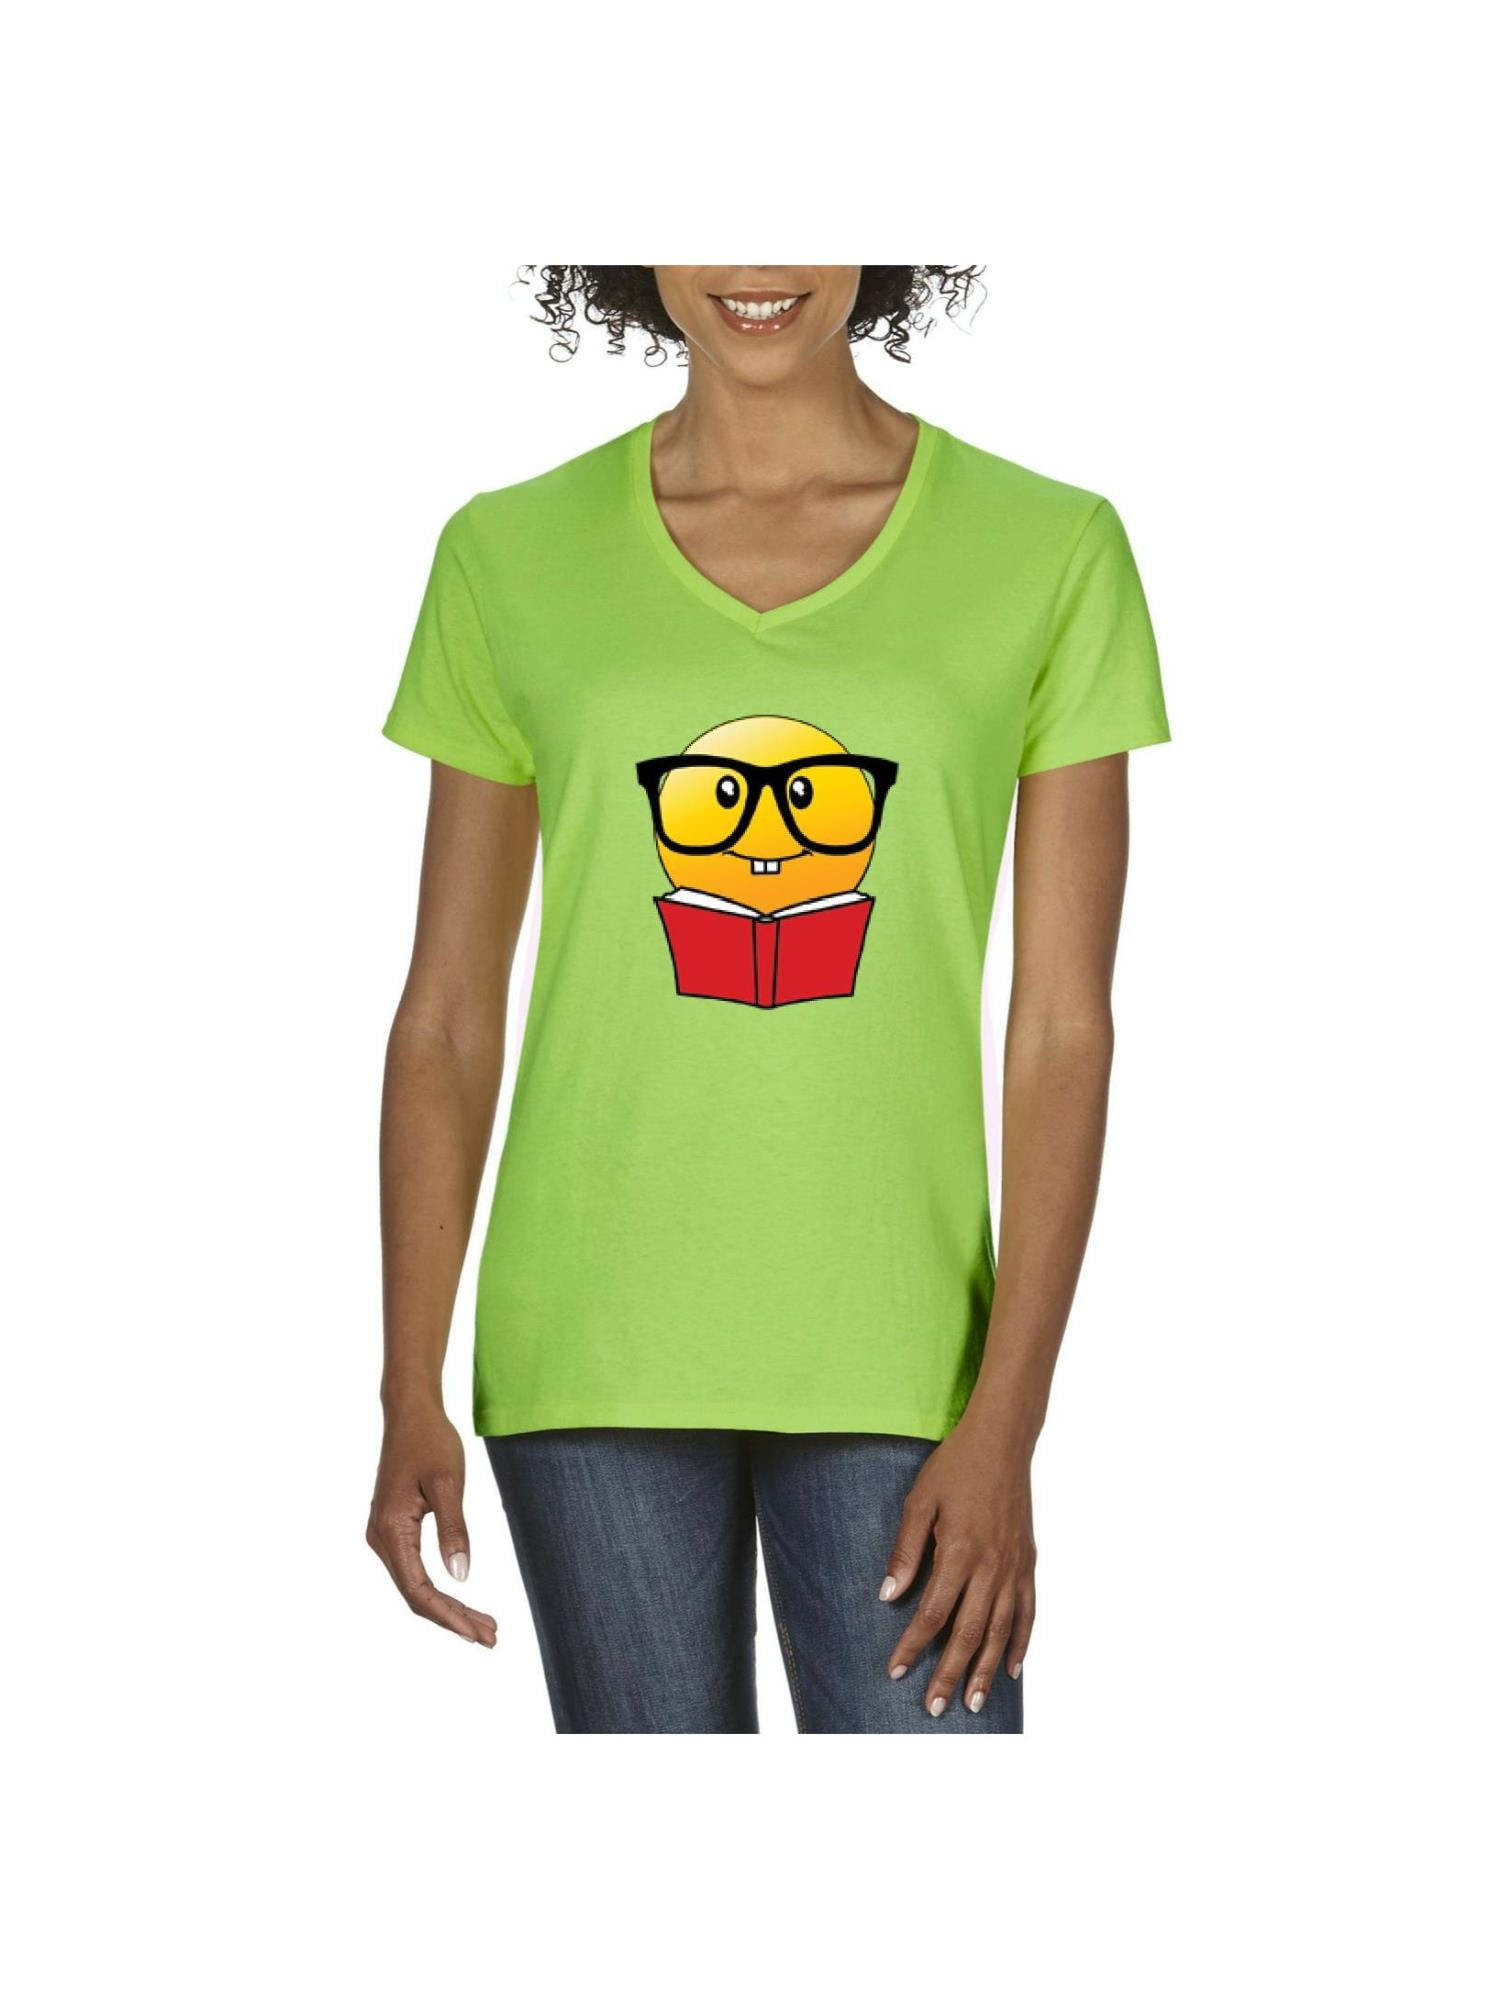 IWPF - Women's T-Shirt V-Neck Short Sleeve, up to Women Size 3XL - Bookworm  Reading Book 